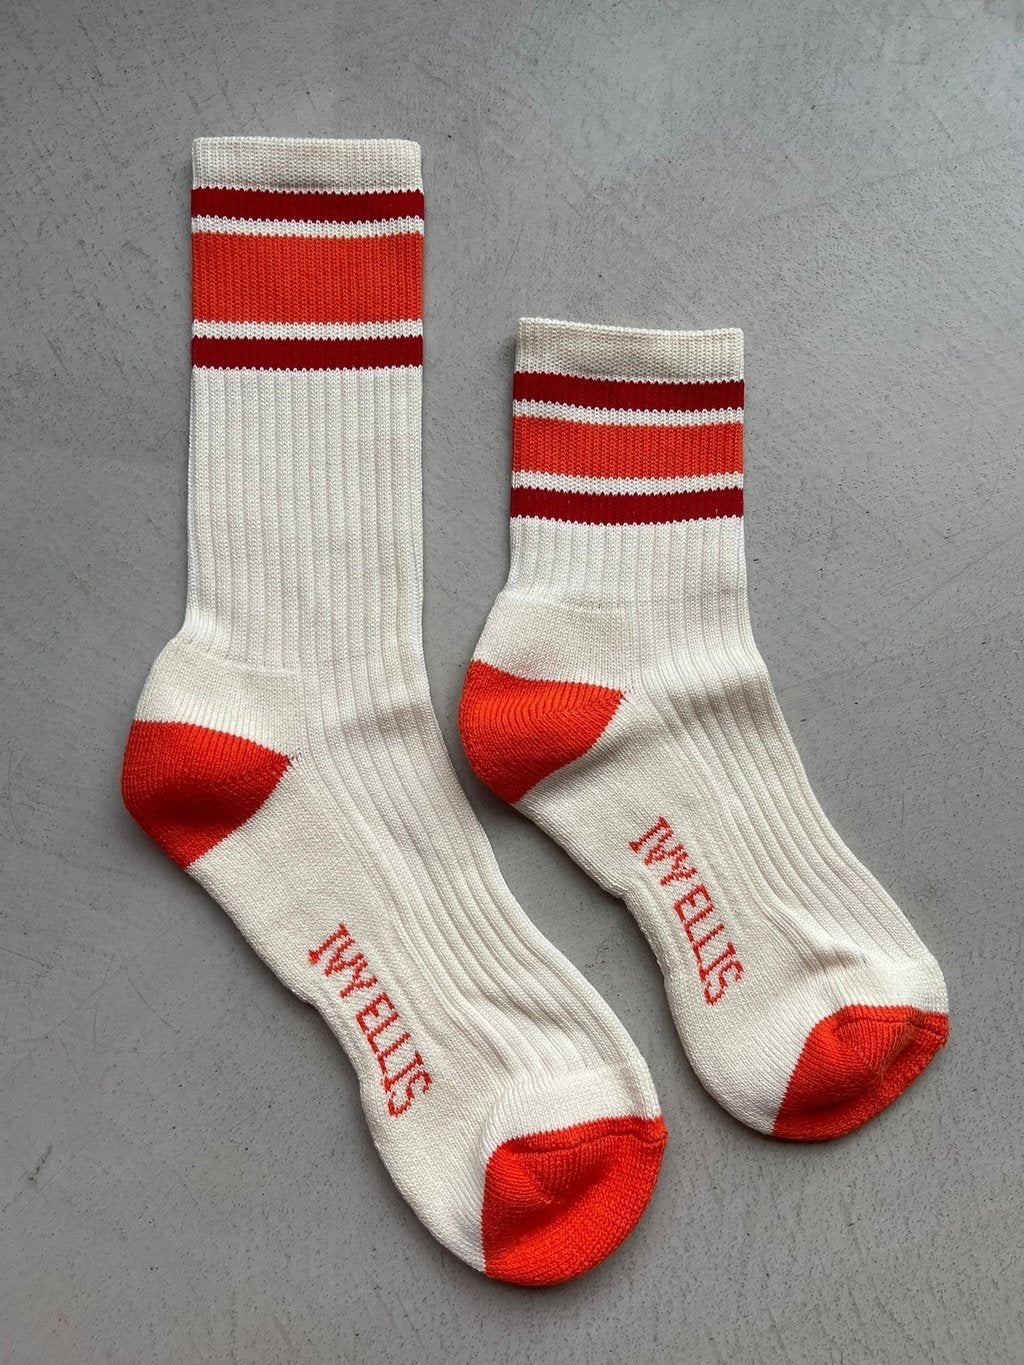 The Testaverde | Women's Quarter Length Socks by Ivy Ellis Socks 